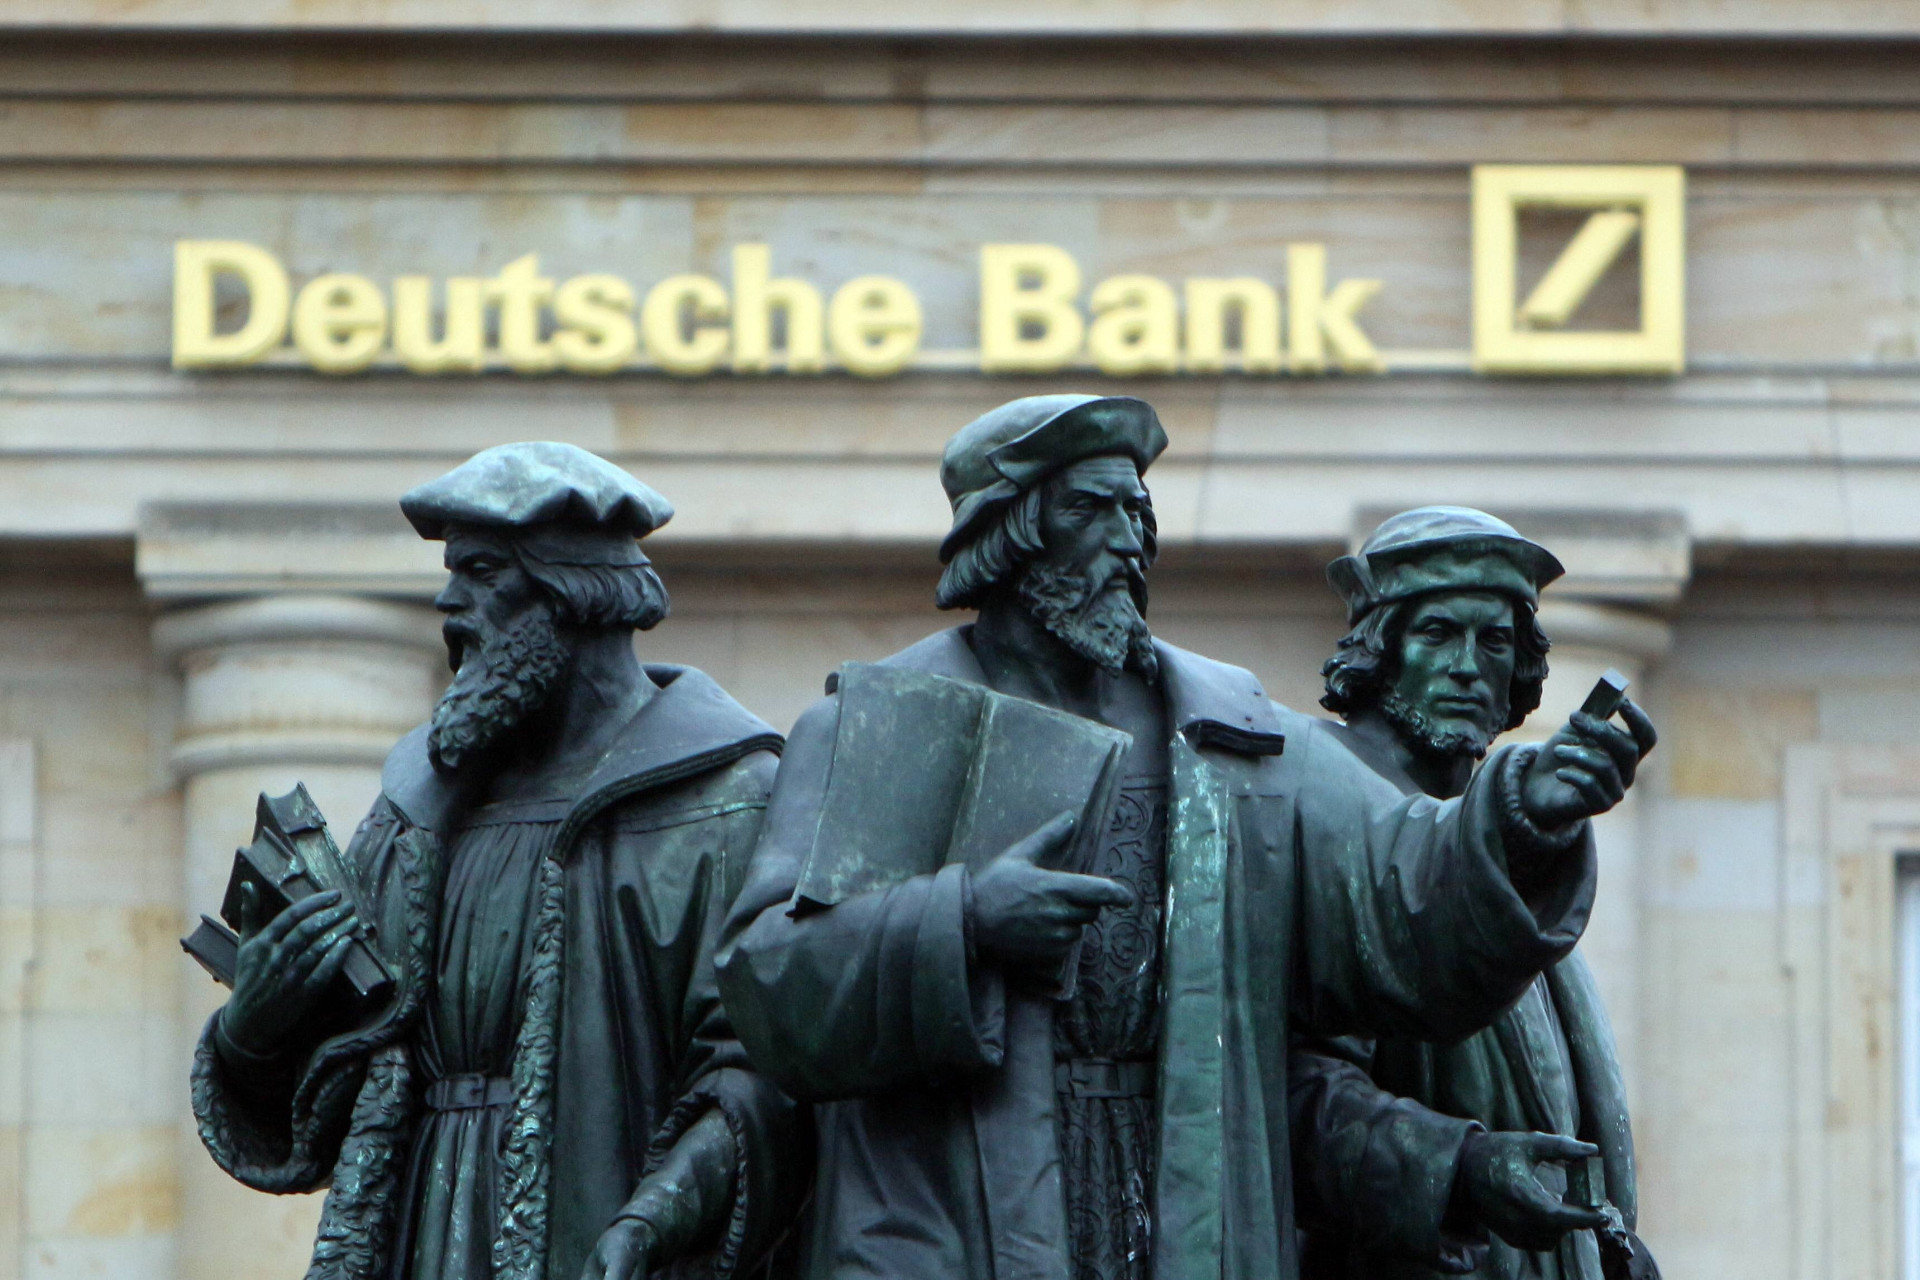 Der bank. Deutsche Bank. Центральный банк ФРГ. Немецкие банки. Дойч банк история.